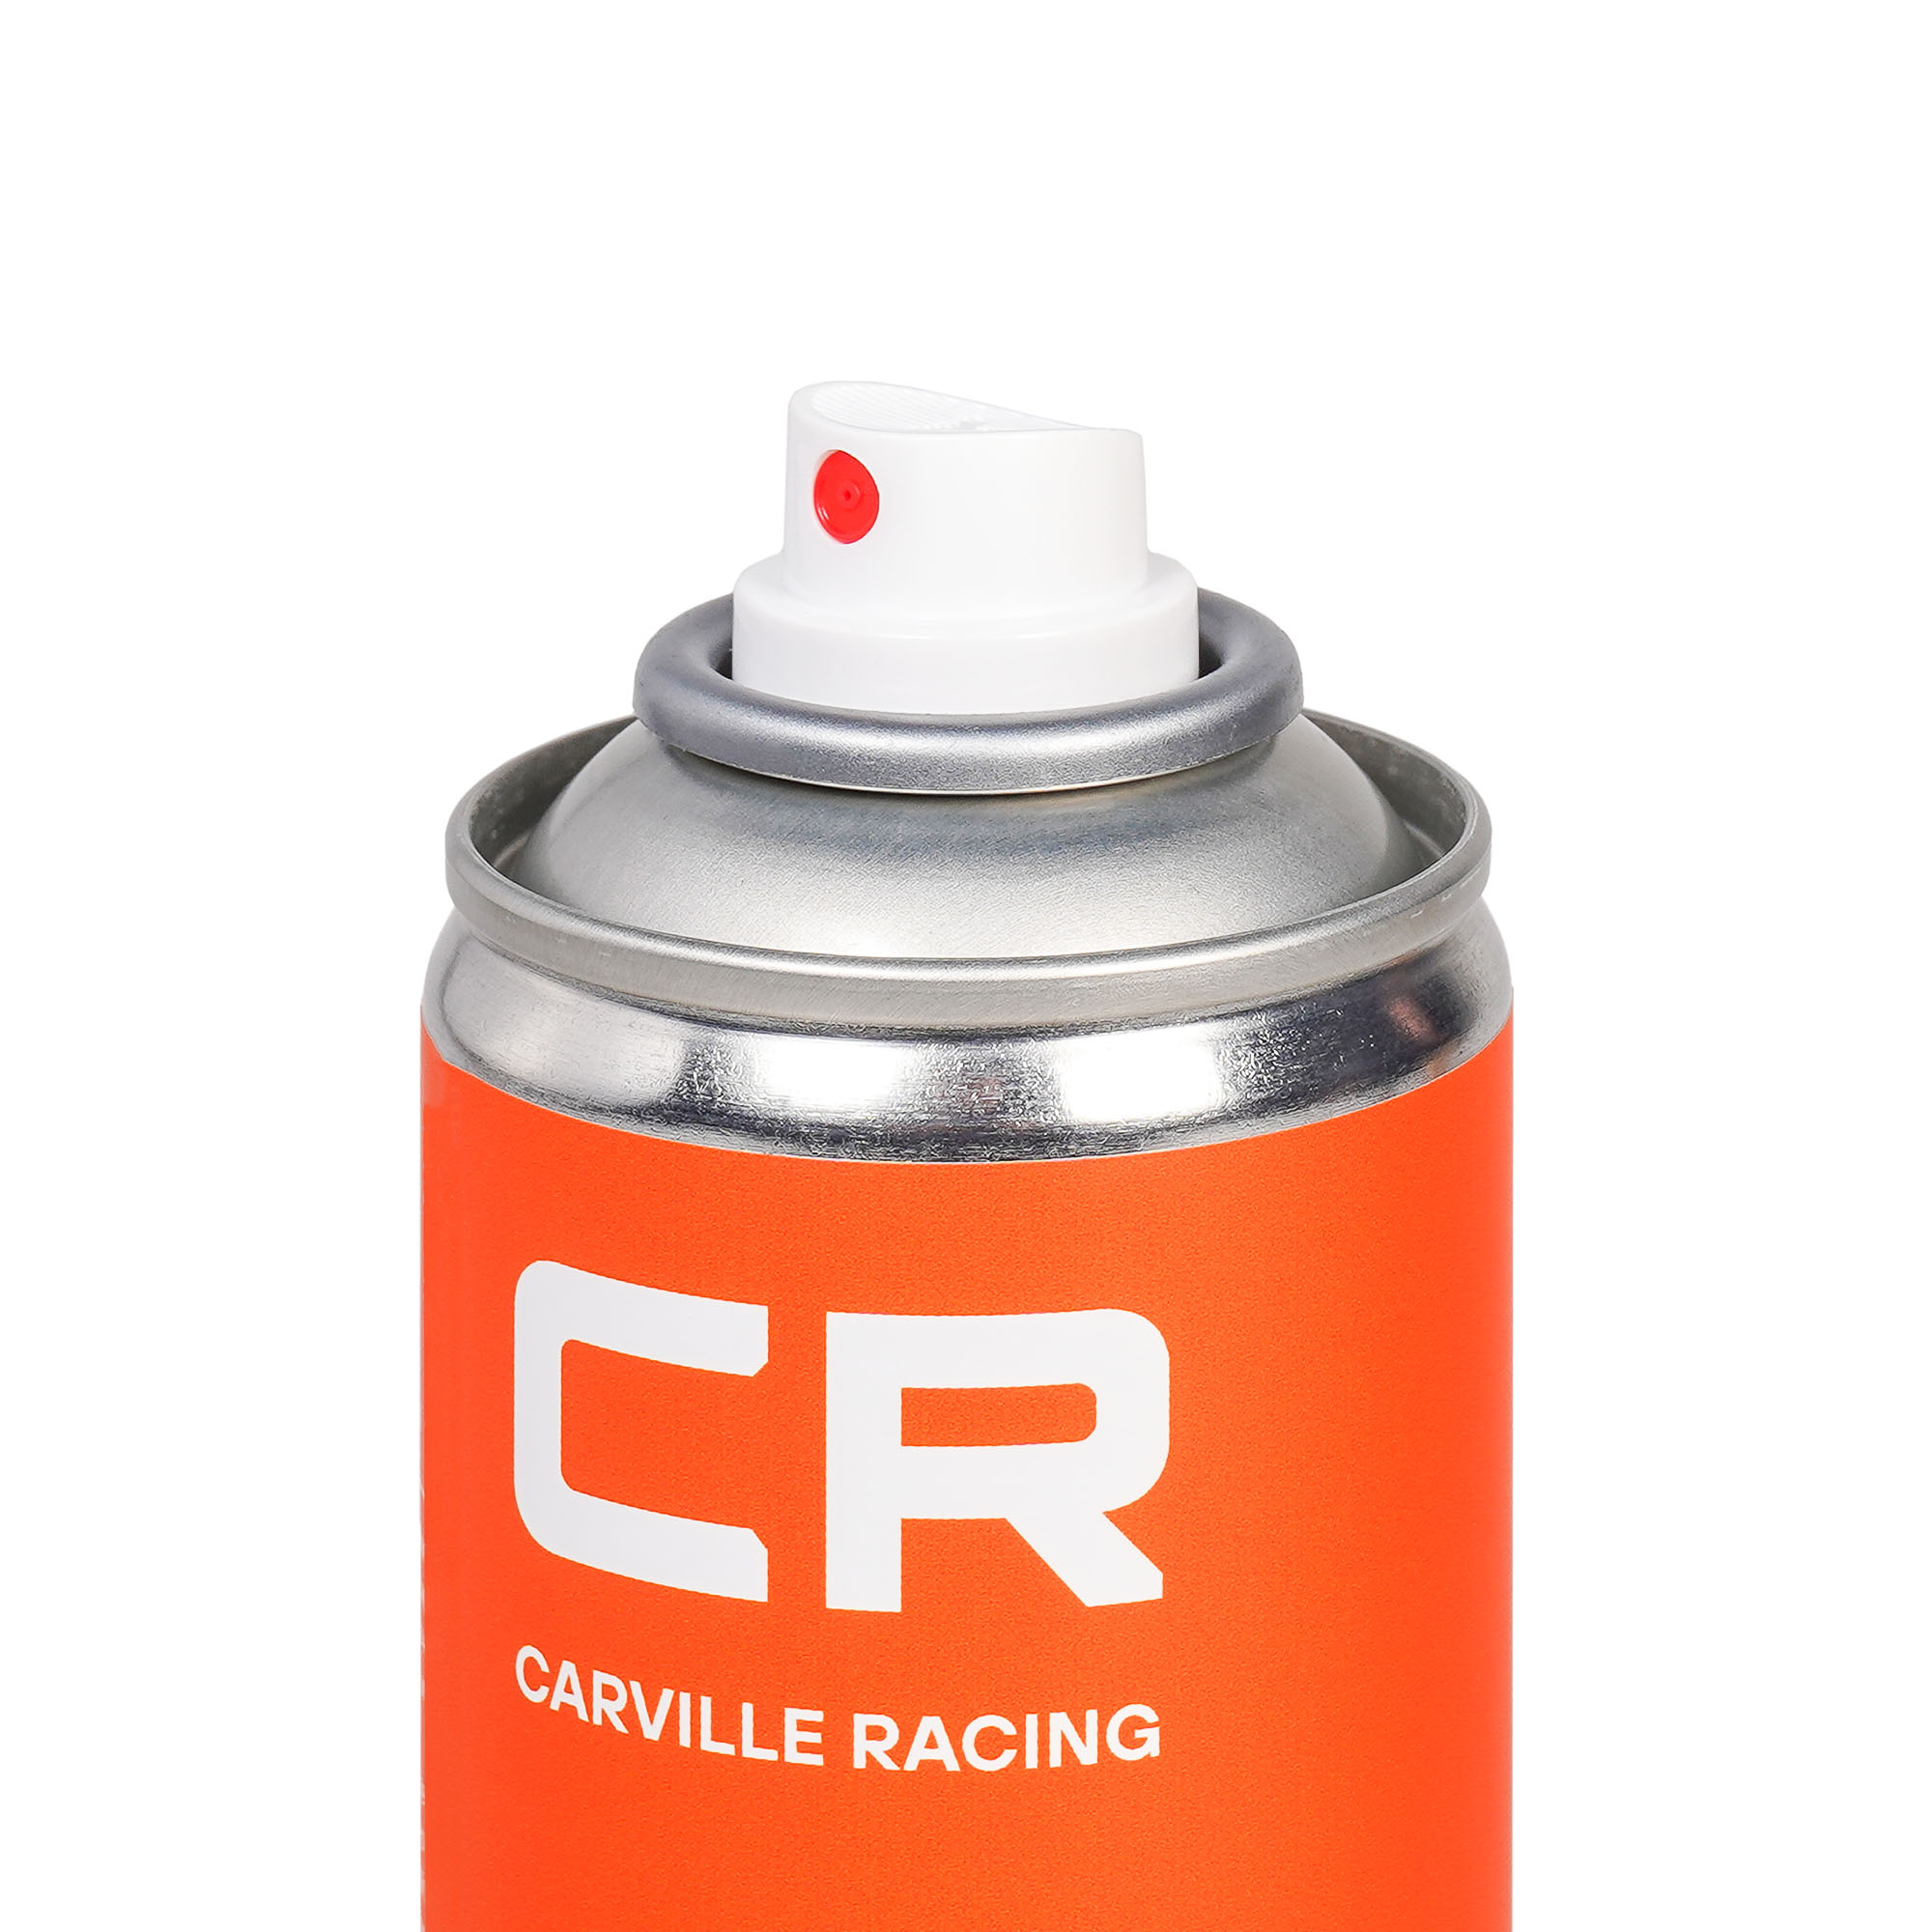 Очиститель кузова от битума, следов насекомых и тополиных почек, аэрозоль, 400 ml Carville Racing S3051789 